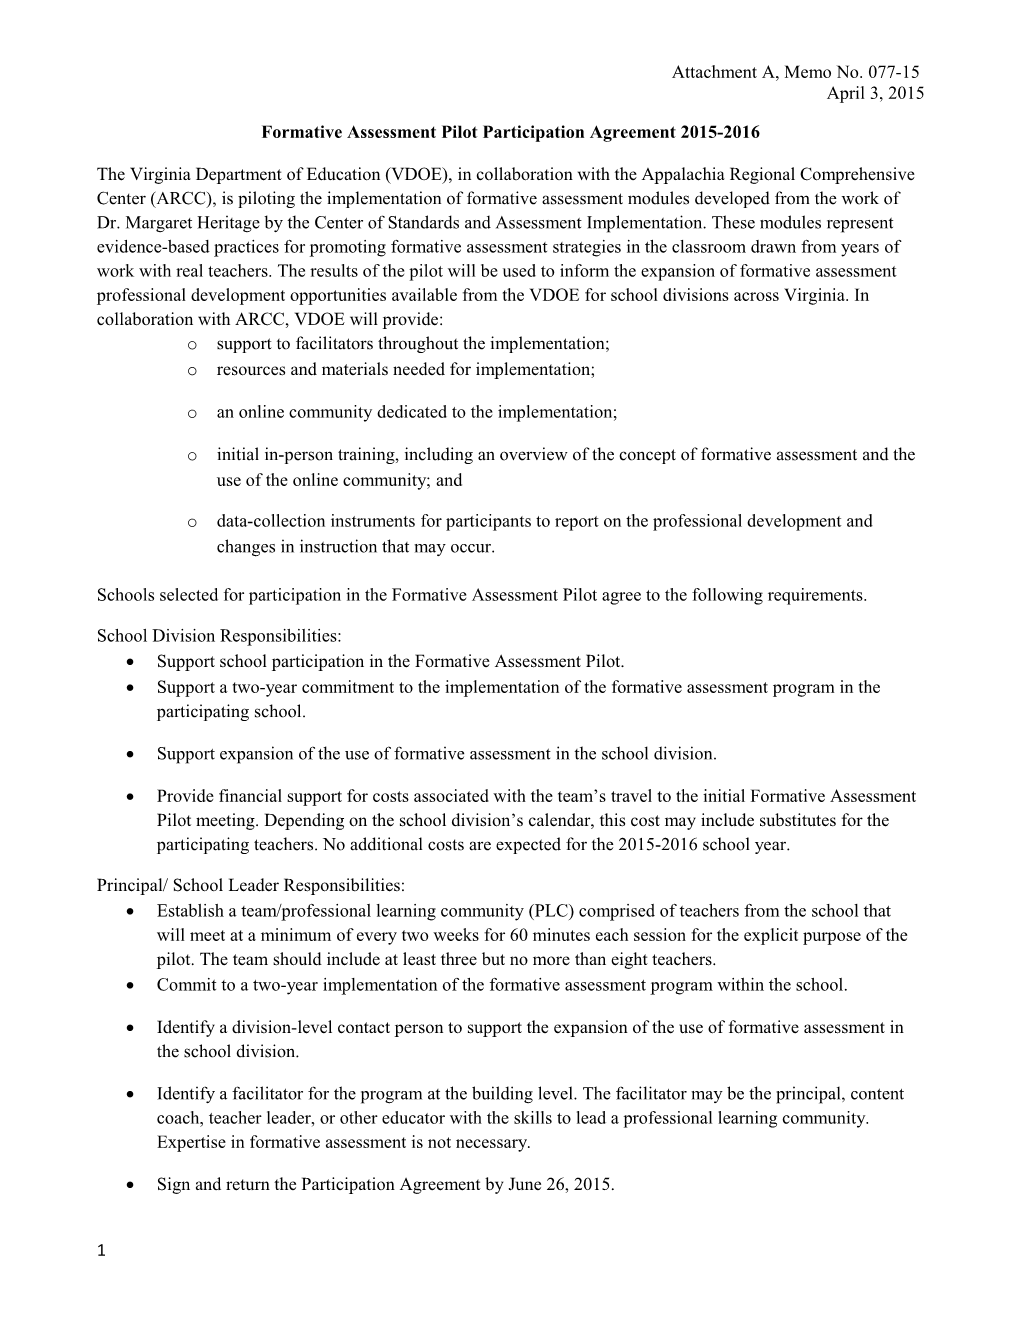 Formative Assessment Pilot Participation Agreement 2015-2016